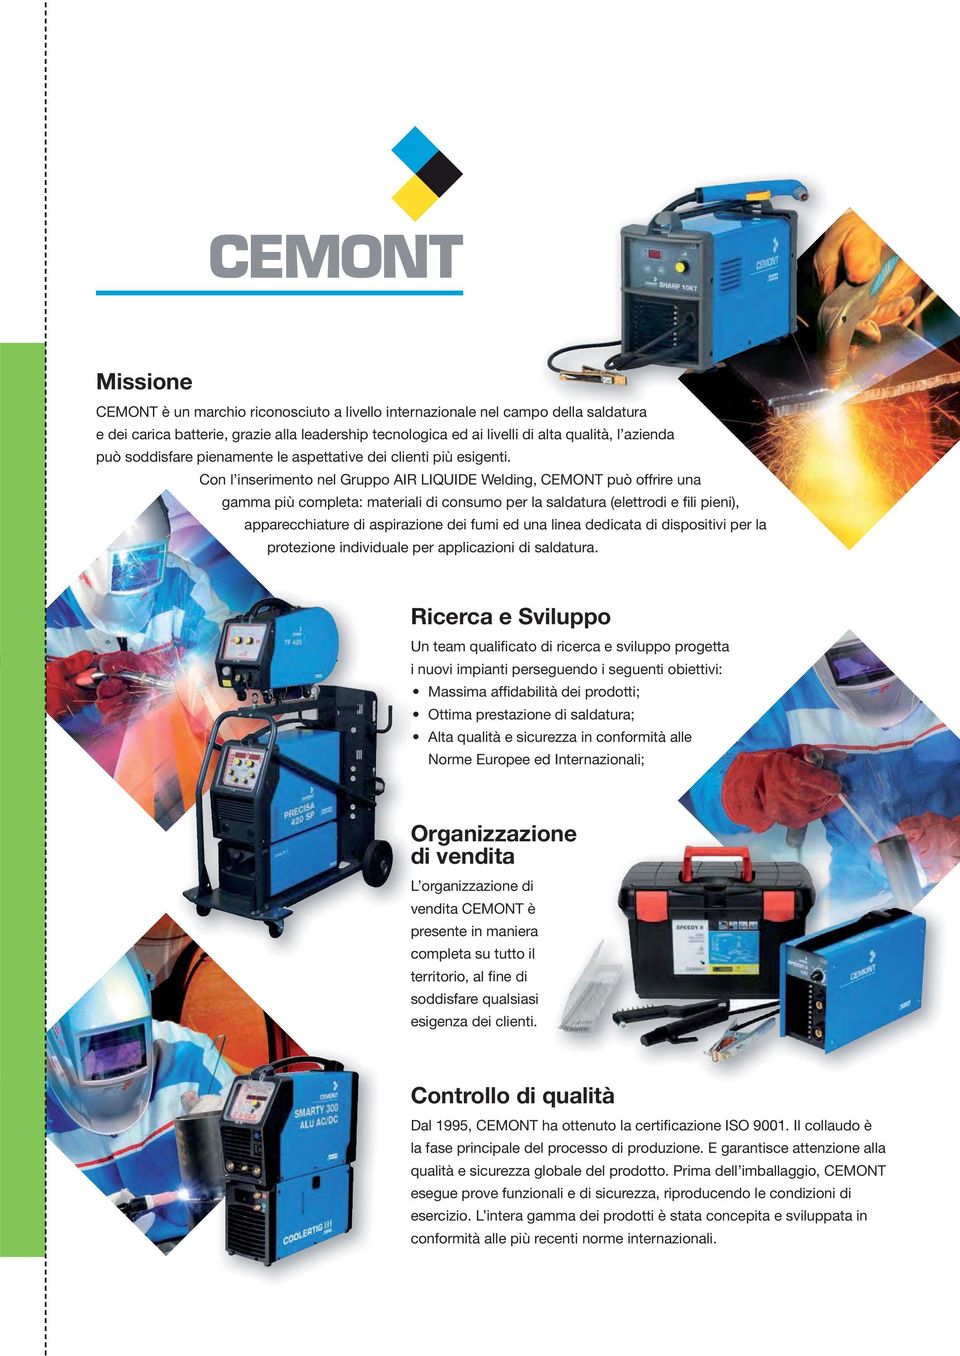 Con l inserimento nel Gruppo AIR LIQUIDE Welding, CEMONT può offrire una gamma più completa: materiali di consumo per la saldatura (elettrodi e fili pieni), apparecchiature di aspirazione dei fumi ed